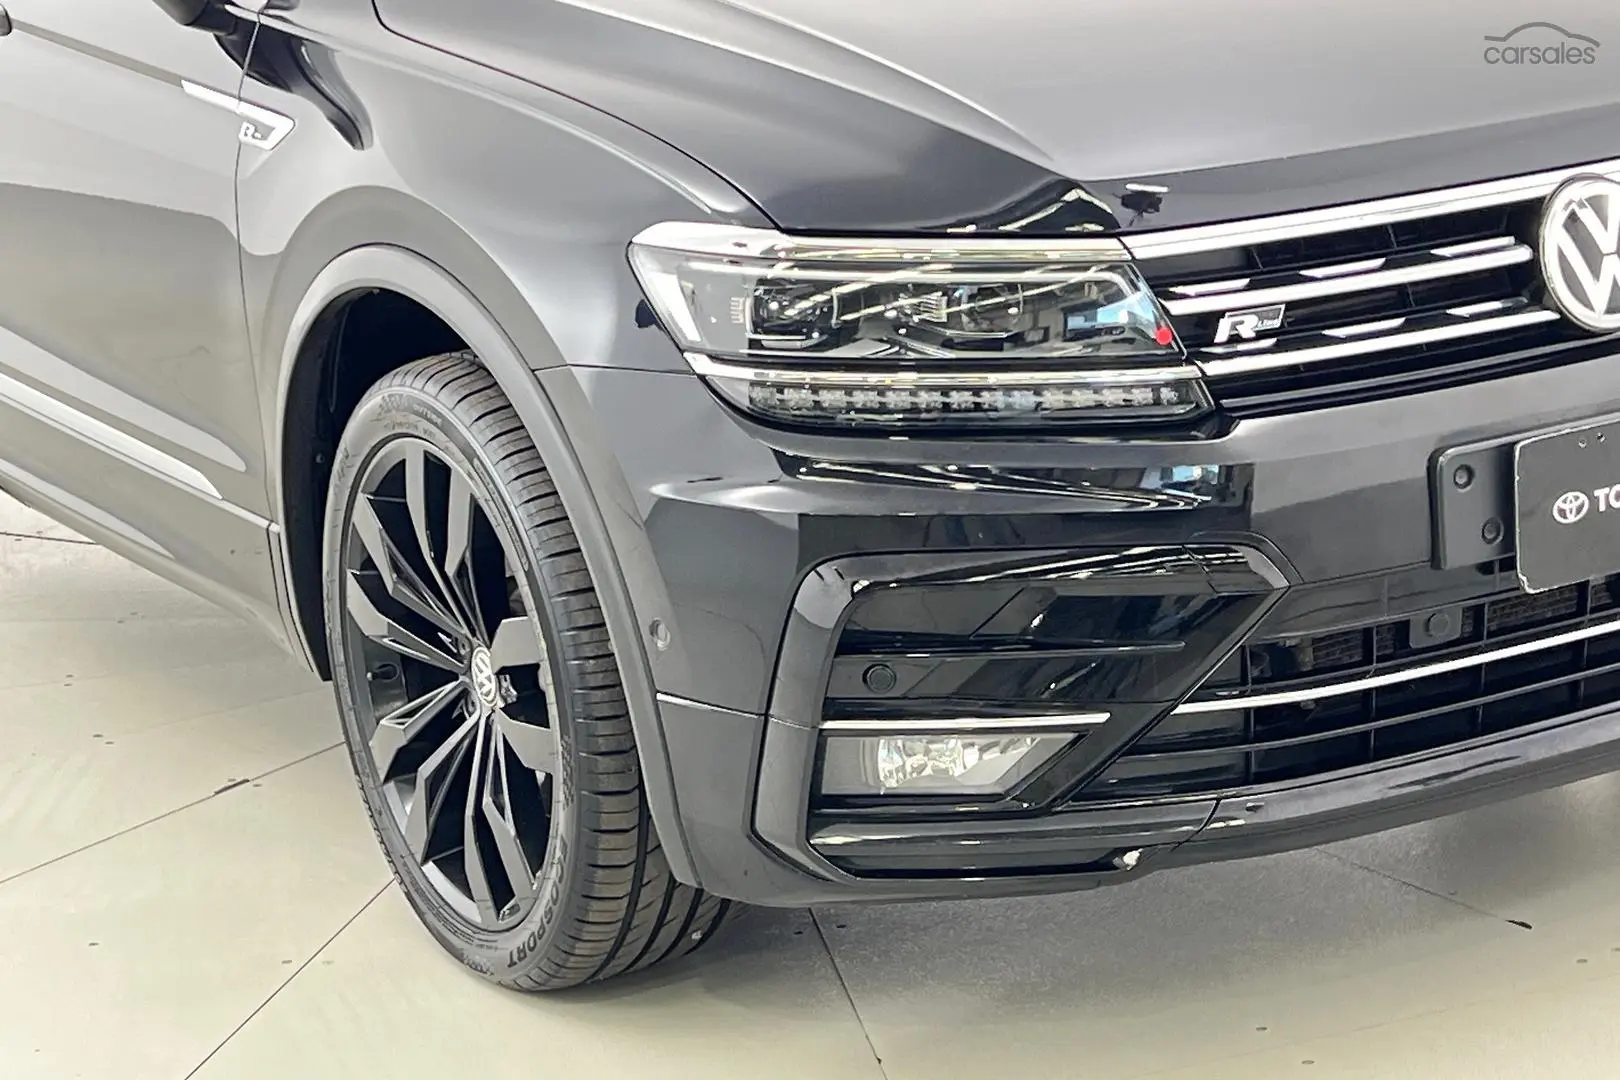 2019 Volkswagen Tiguan Image 2